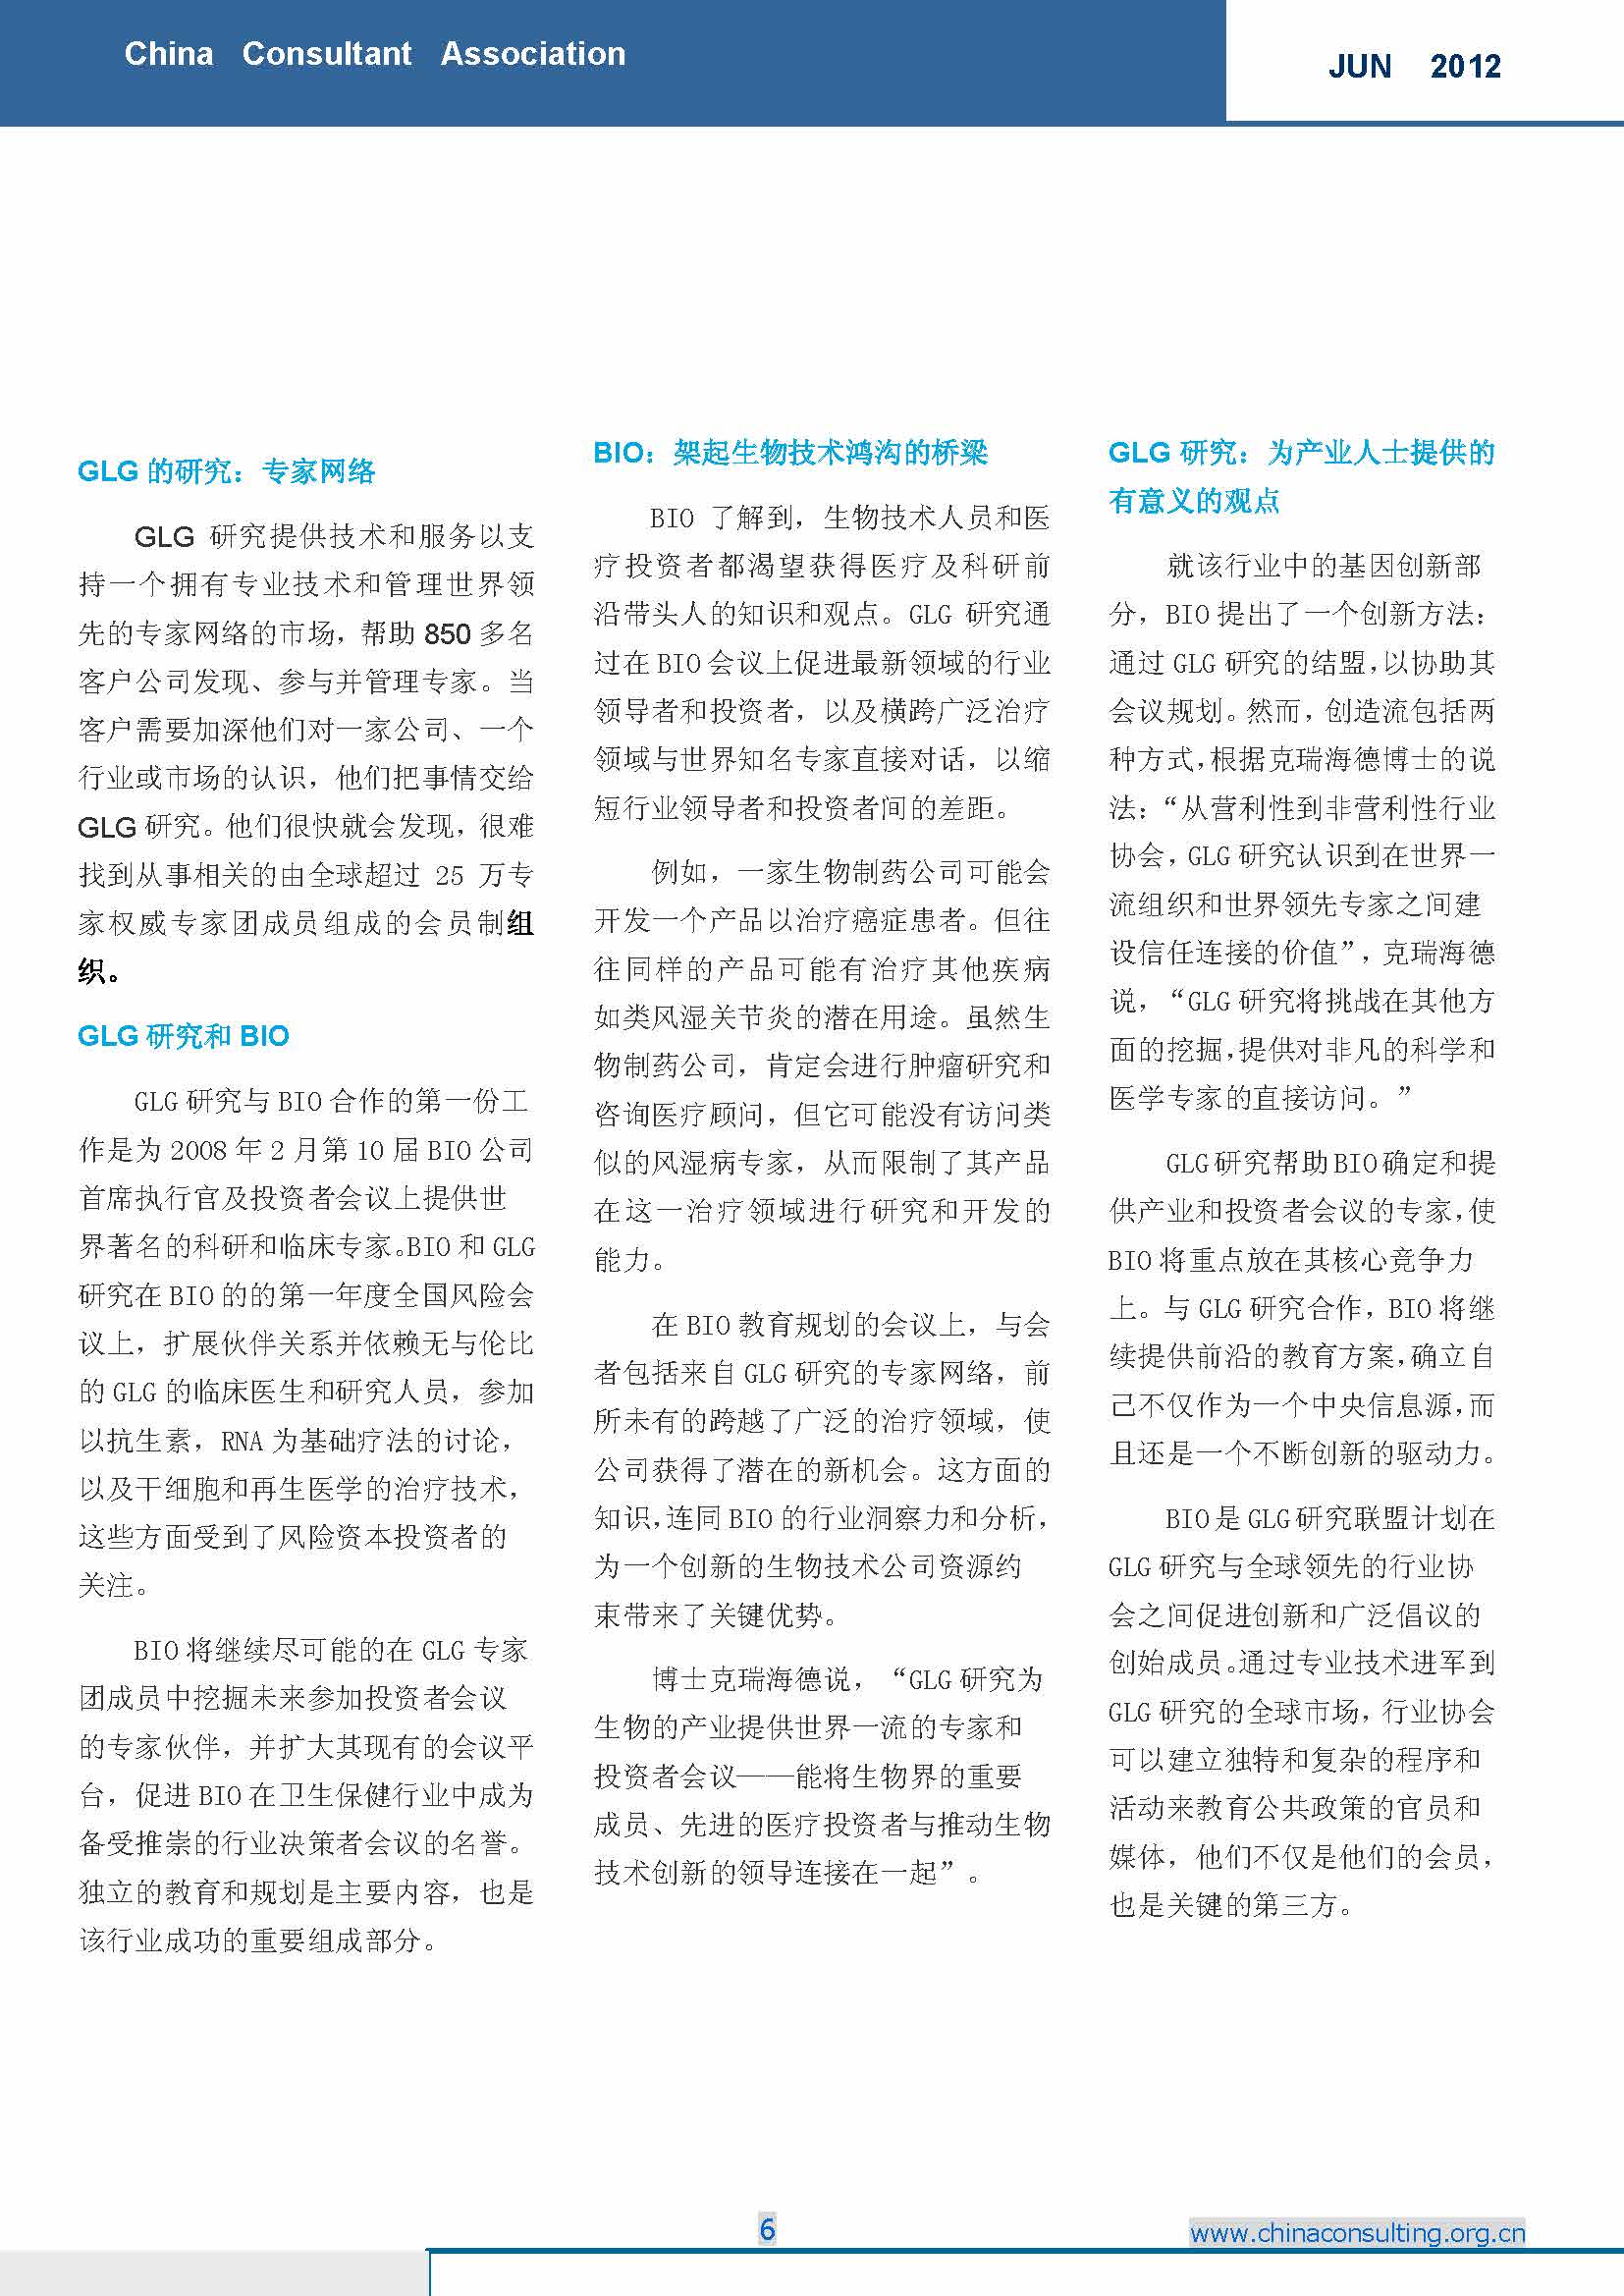 7中国科技咨询协会国际快讯（第七期）_页面_08.jpg